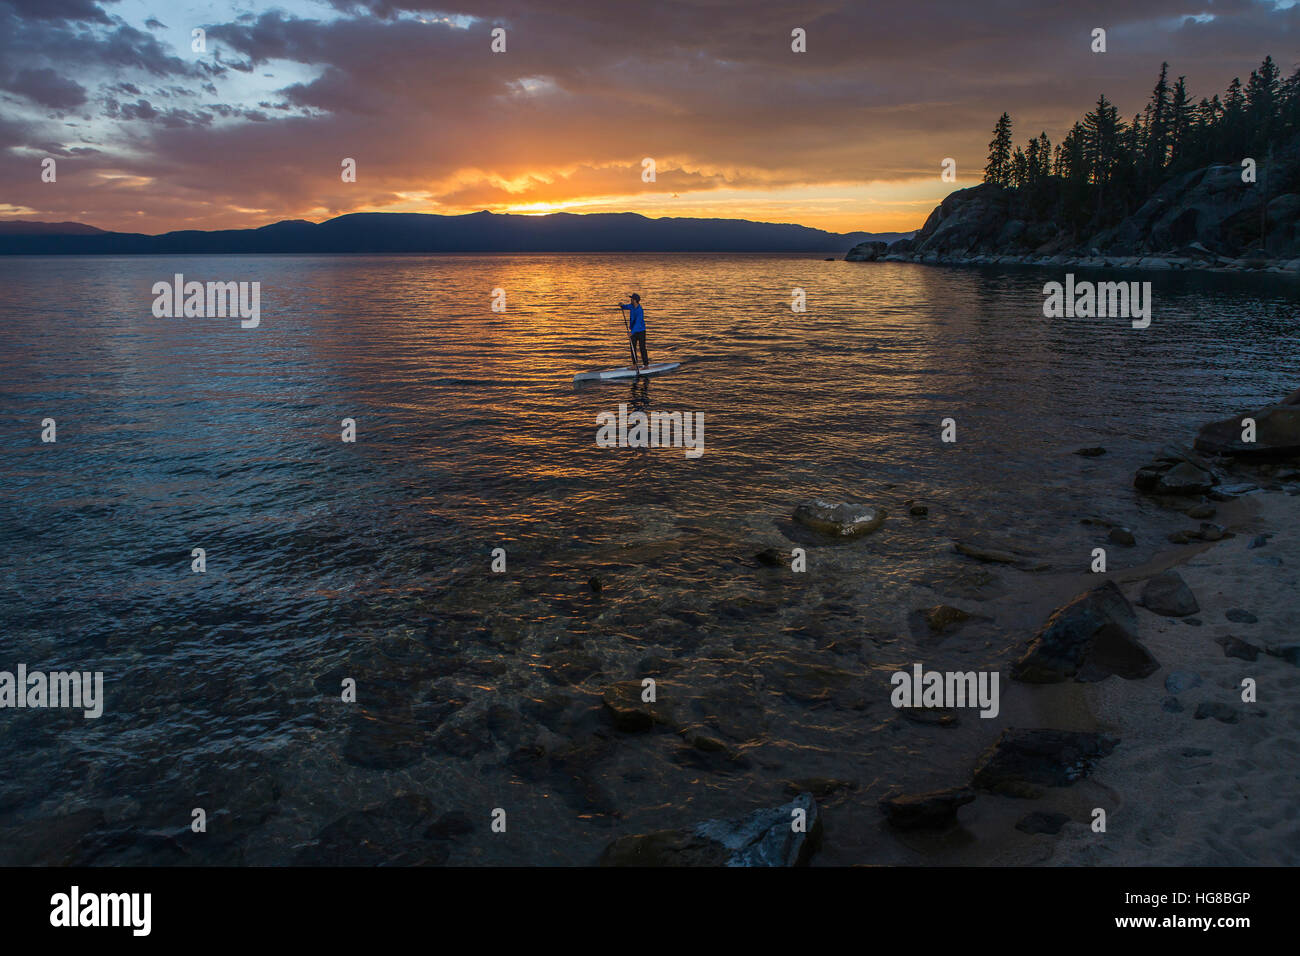 Man paddleboarding in lake during sunset Stock Photo